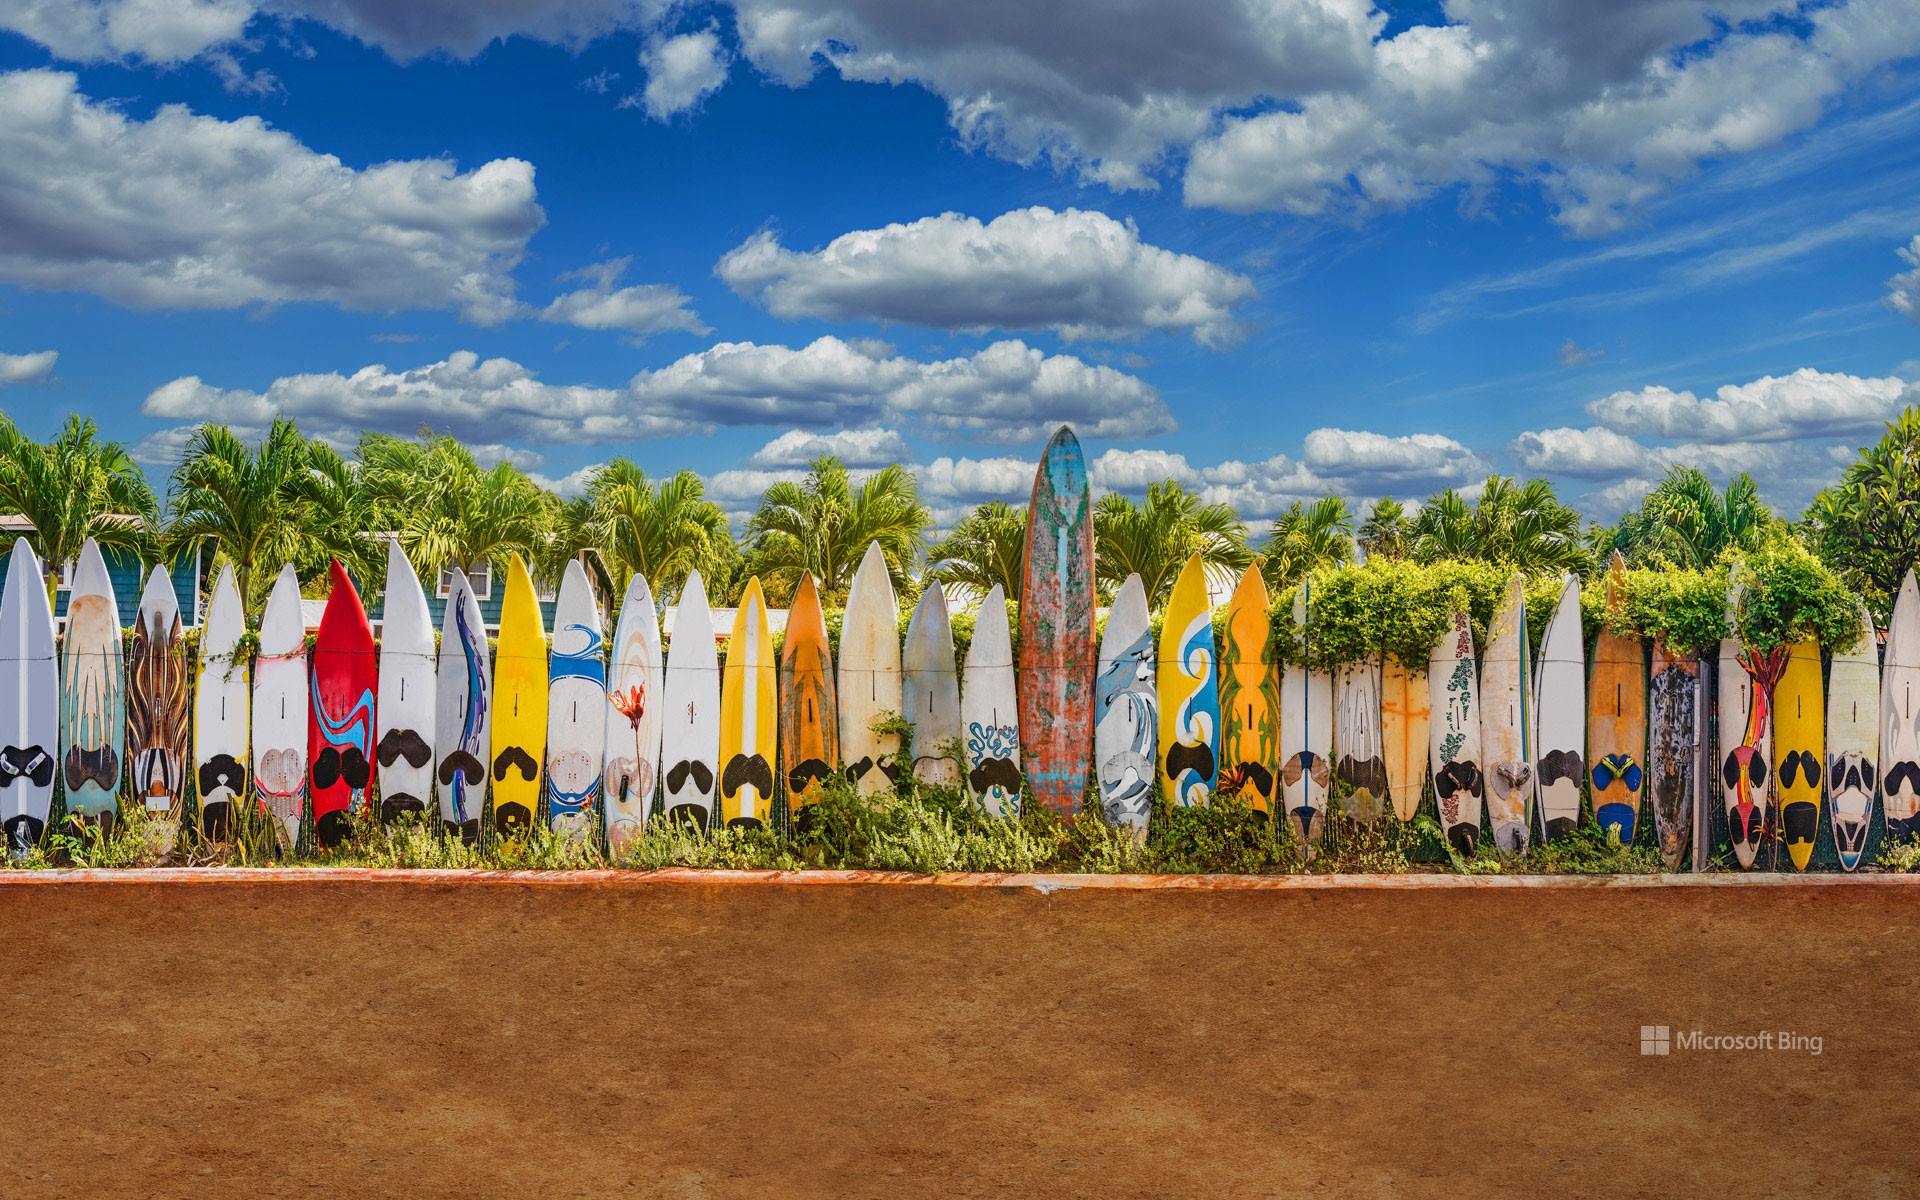 A surfboard fence near Paia, Maui, Hawaii